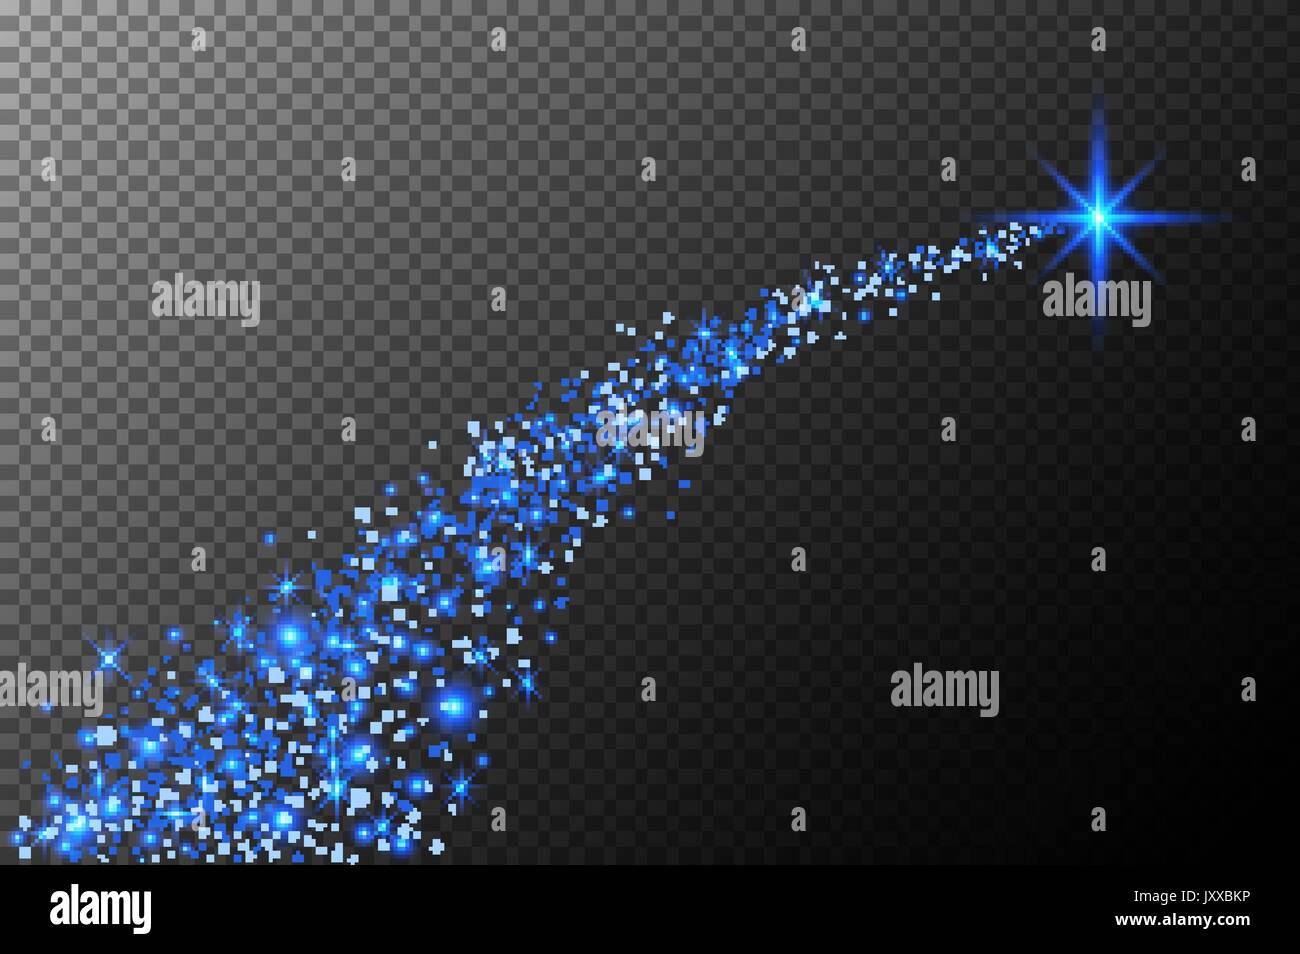 Stella Luminosa Di Natale.Abstract Luminose Stelle Cadenti Stella Di Natale Shooting Star Con Stelle Scintillanti Trail Su Sfondo Blu Scuro Meteoroid Comet Asteroide Backdro Immagine E Vettoriale Alamy